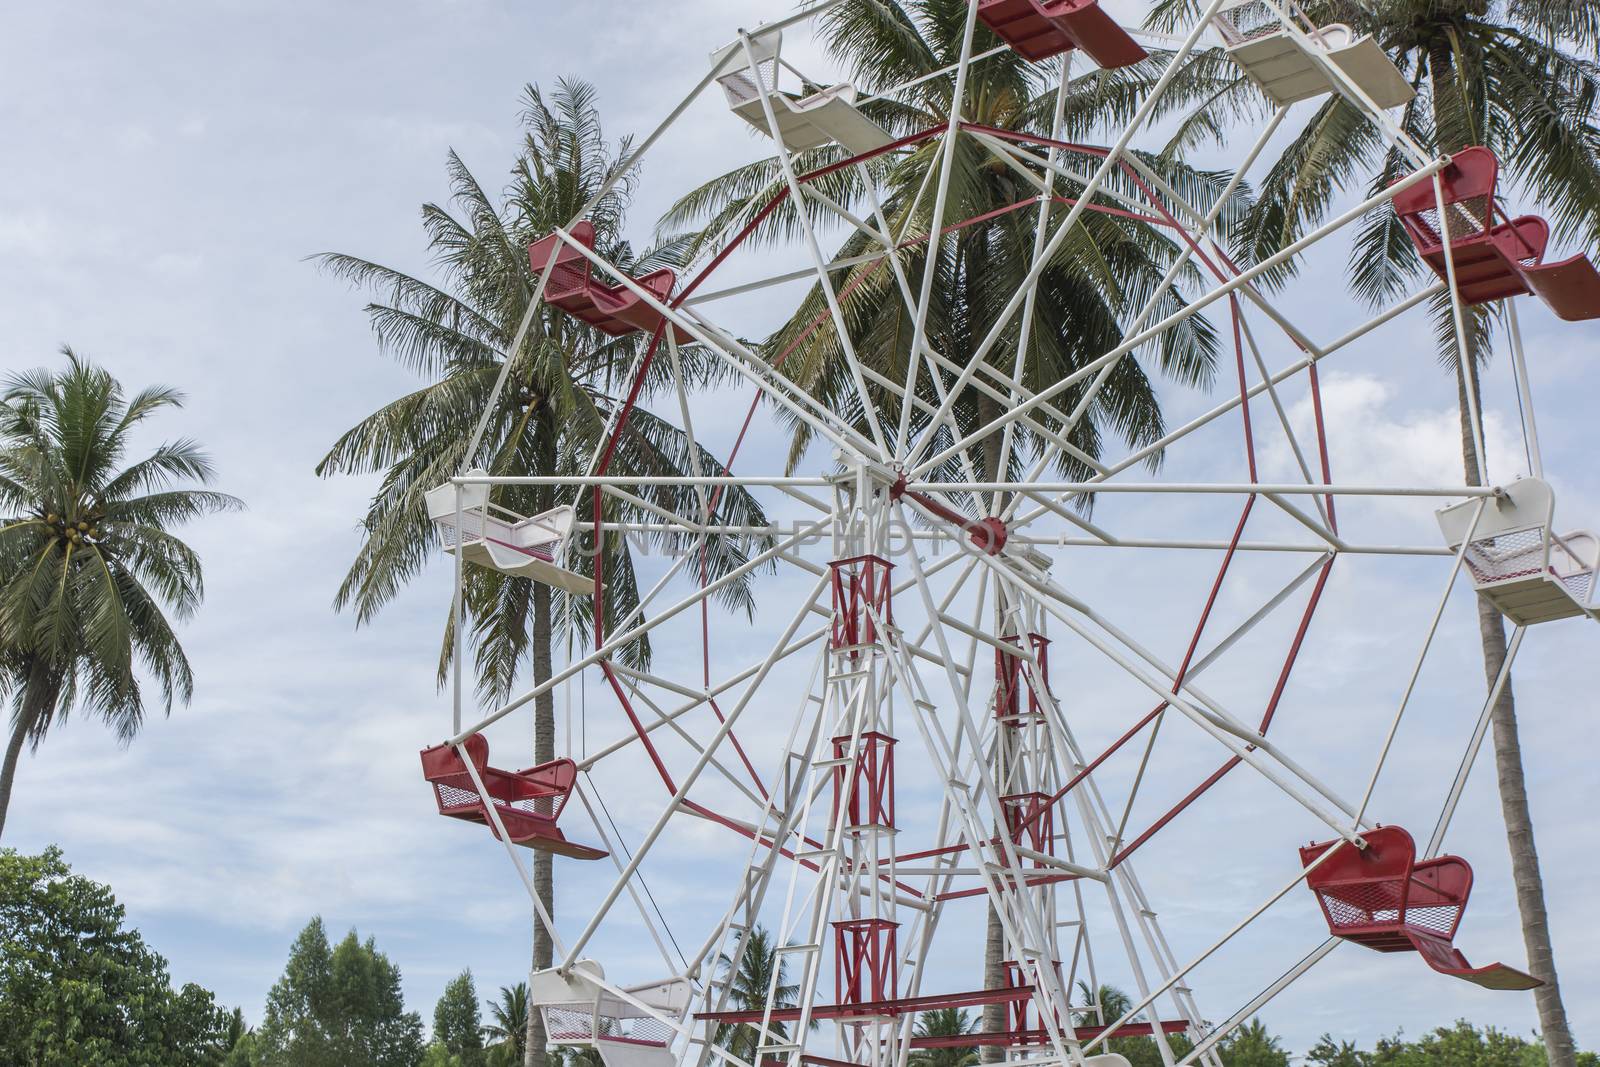 Ferris Wheel in farm by Sorapop